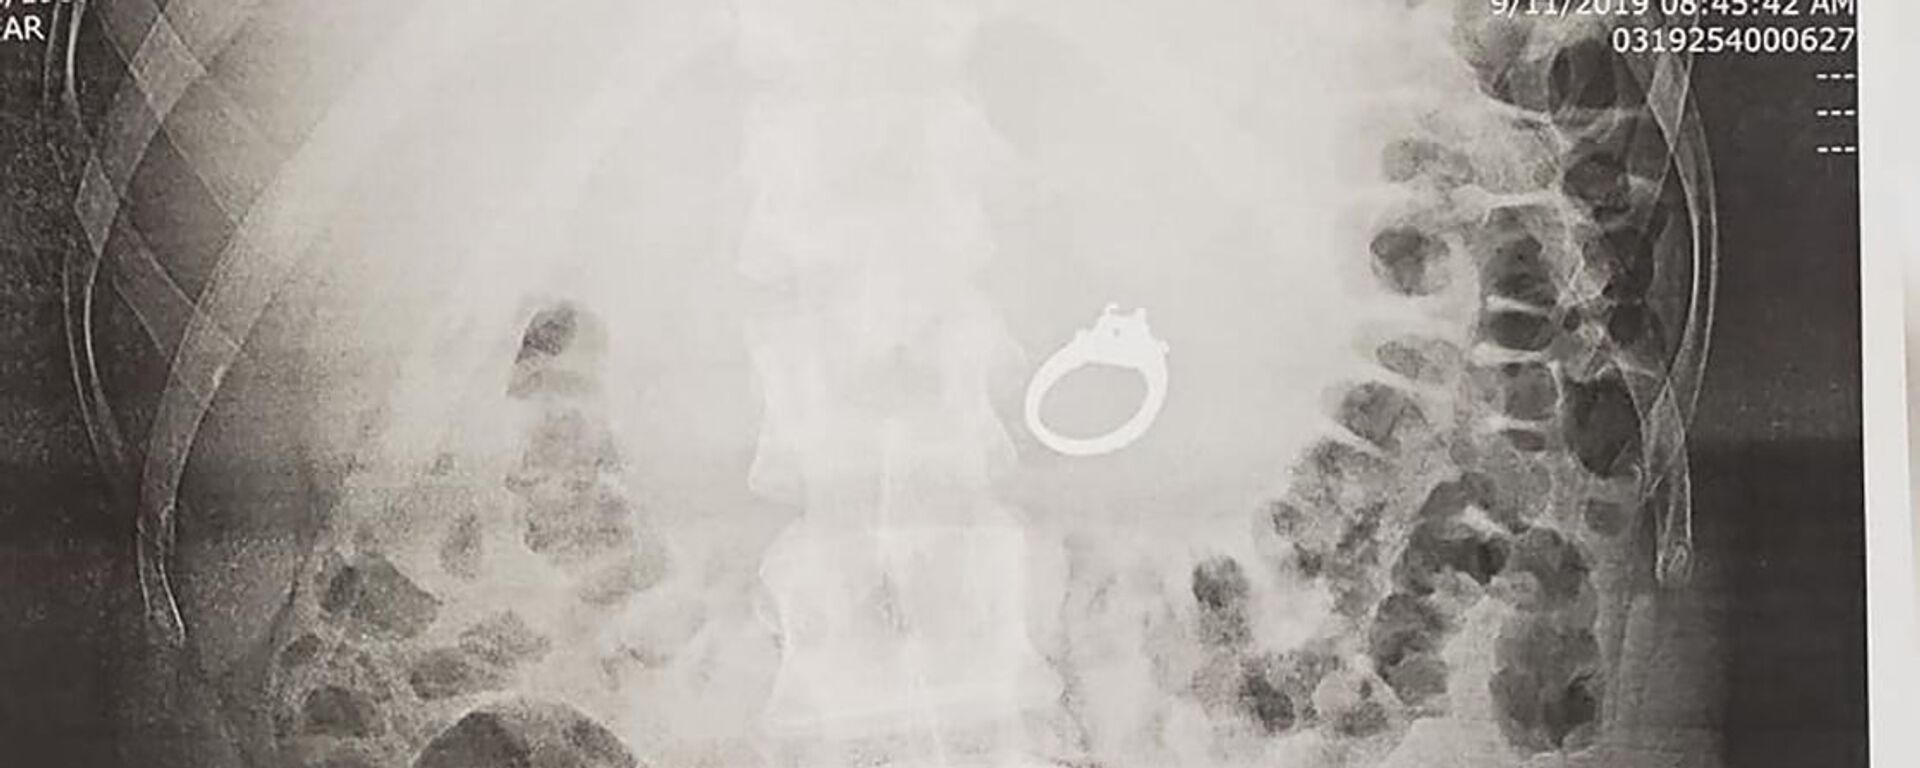 Американка проглотила кольцо, испугавшись приснившихся грабителей - Sputnik Lietuva, 1920, 16.09.2019